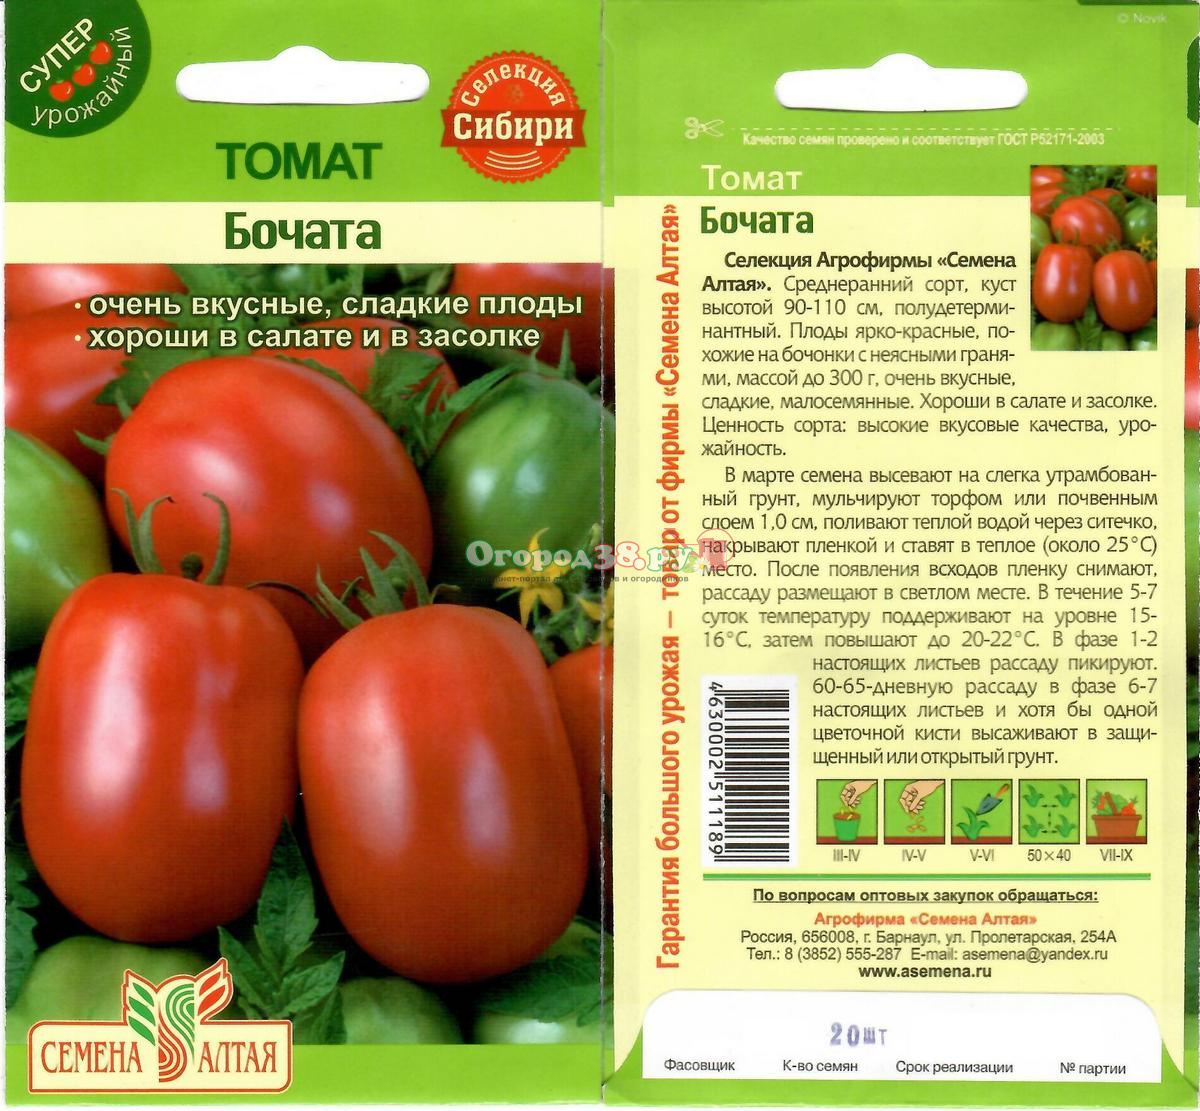 12 лучших крупноплодных томатов для открытого грунта и теплиц